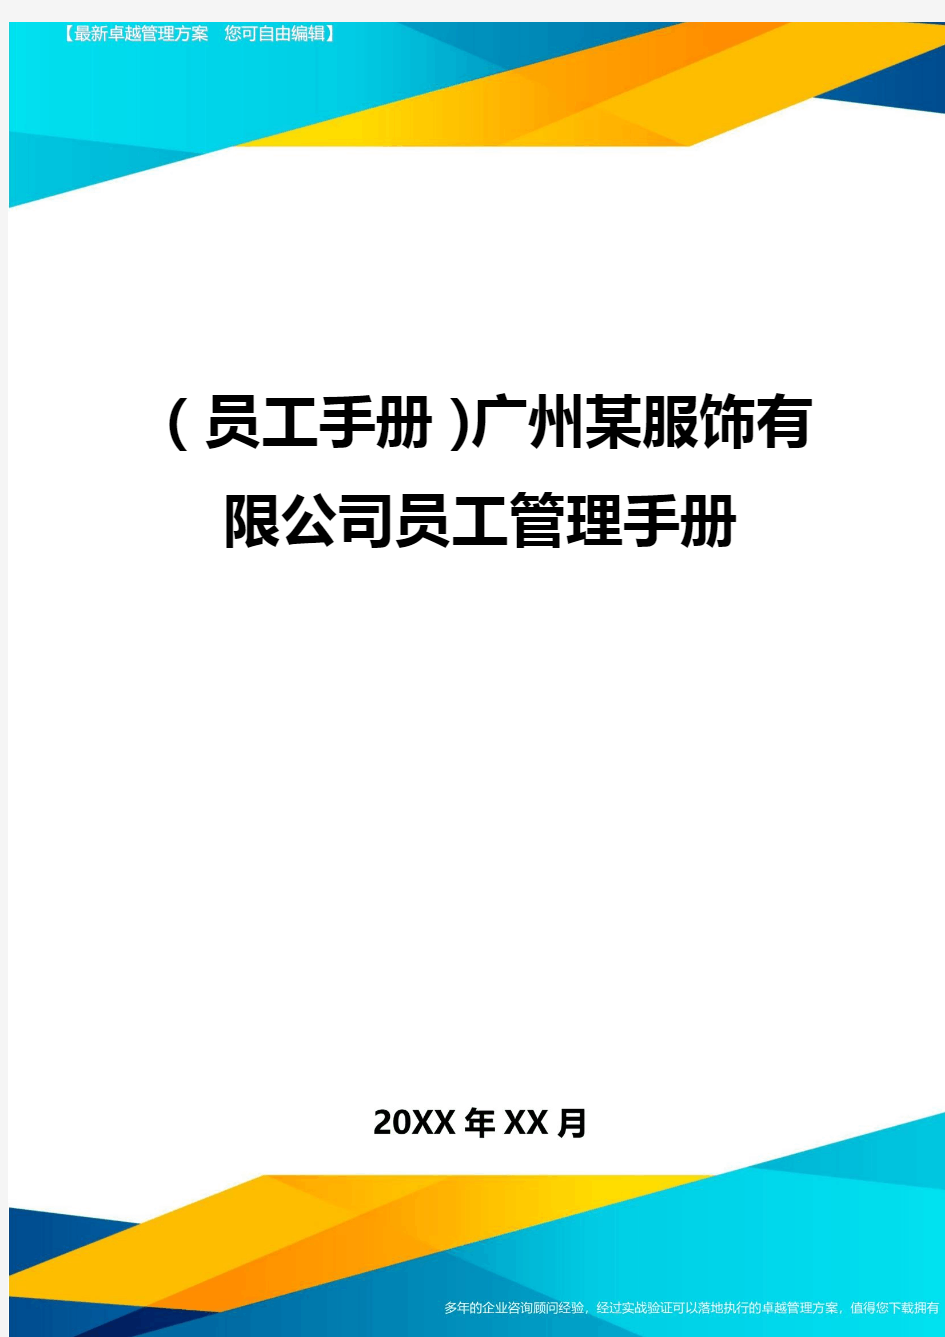 2020年员工手册广州某服饰有限公司员工管理手册完整版